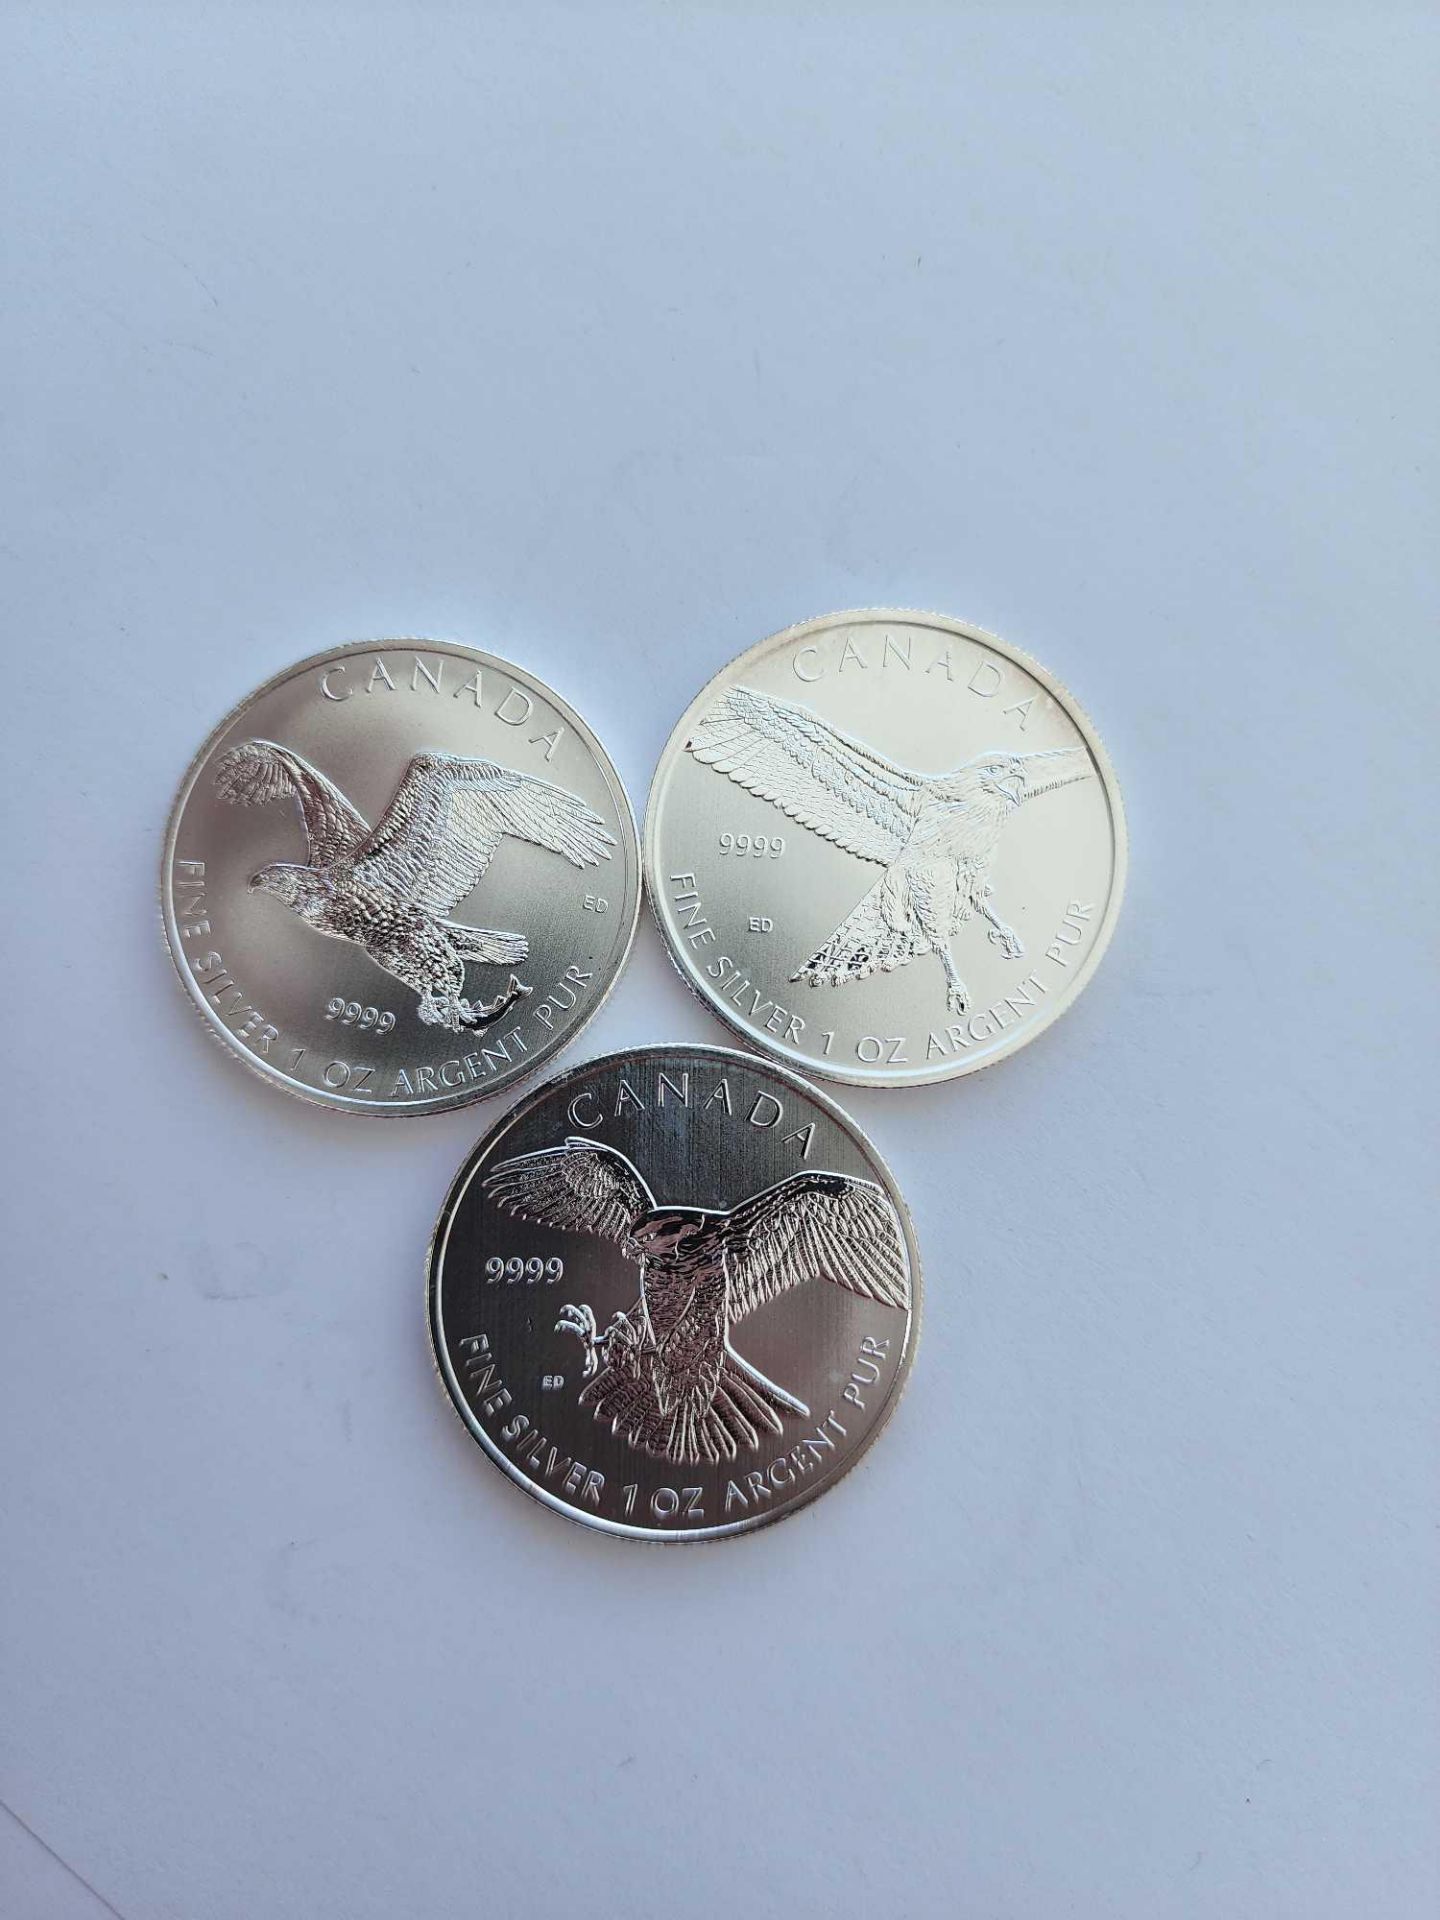 3 1 oz Silver canada birds silver coins - Image 2 of 5